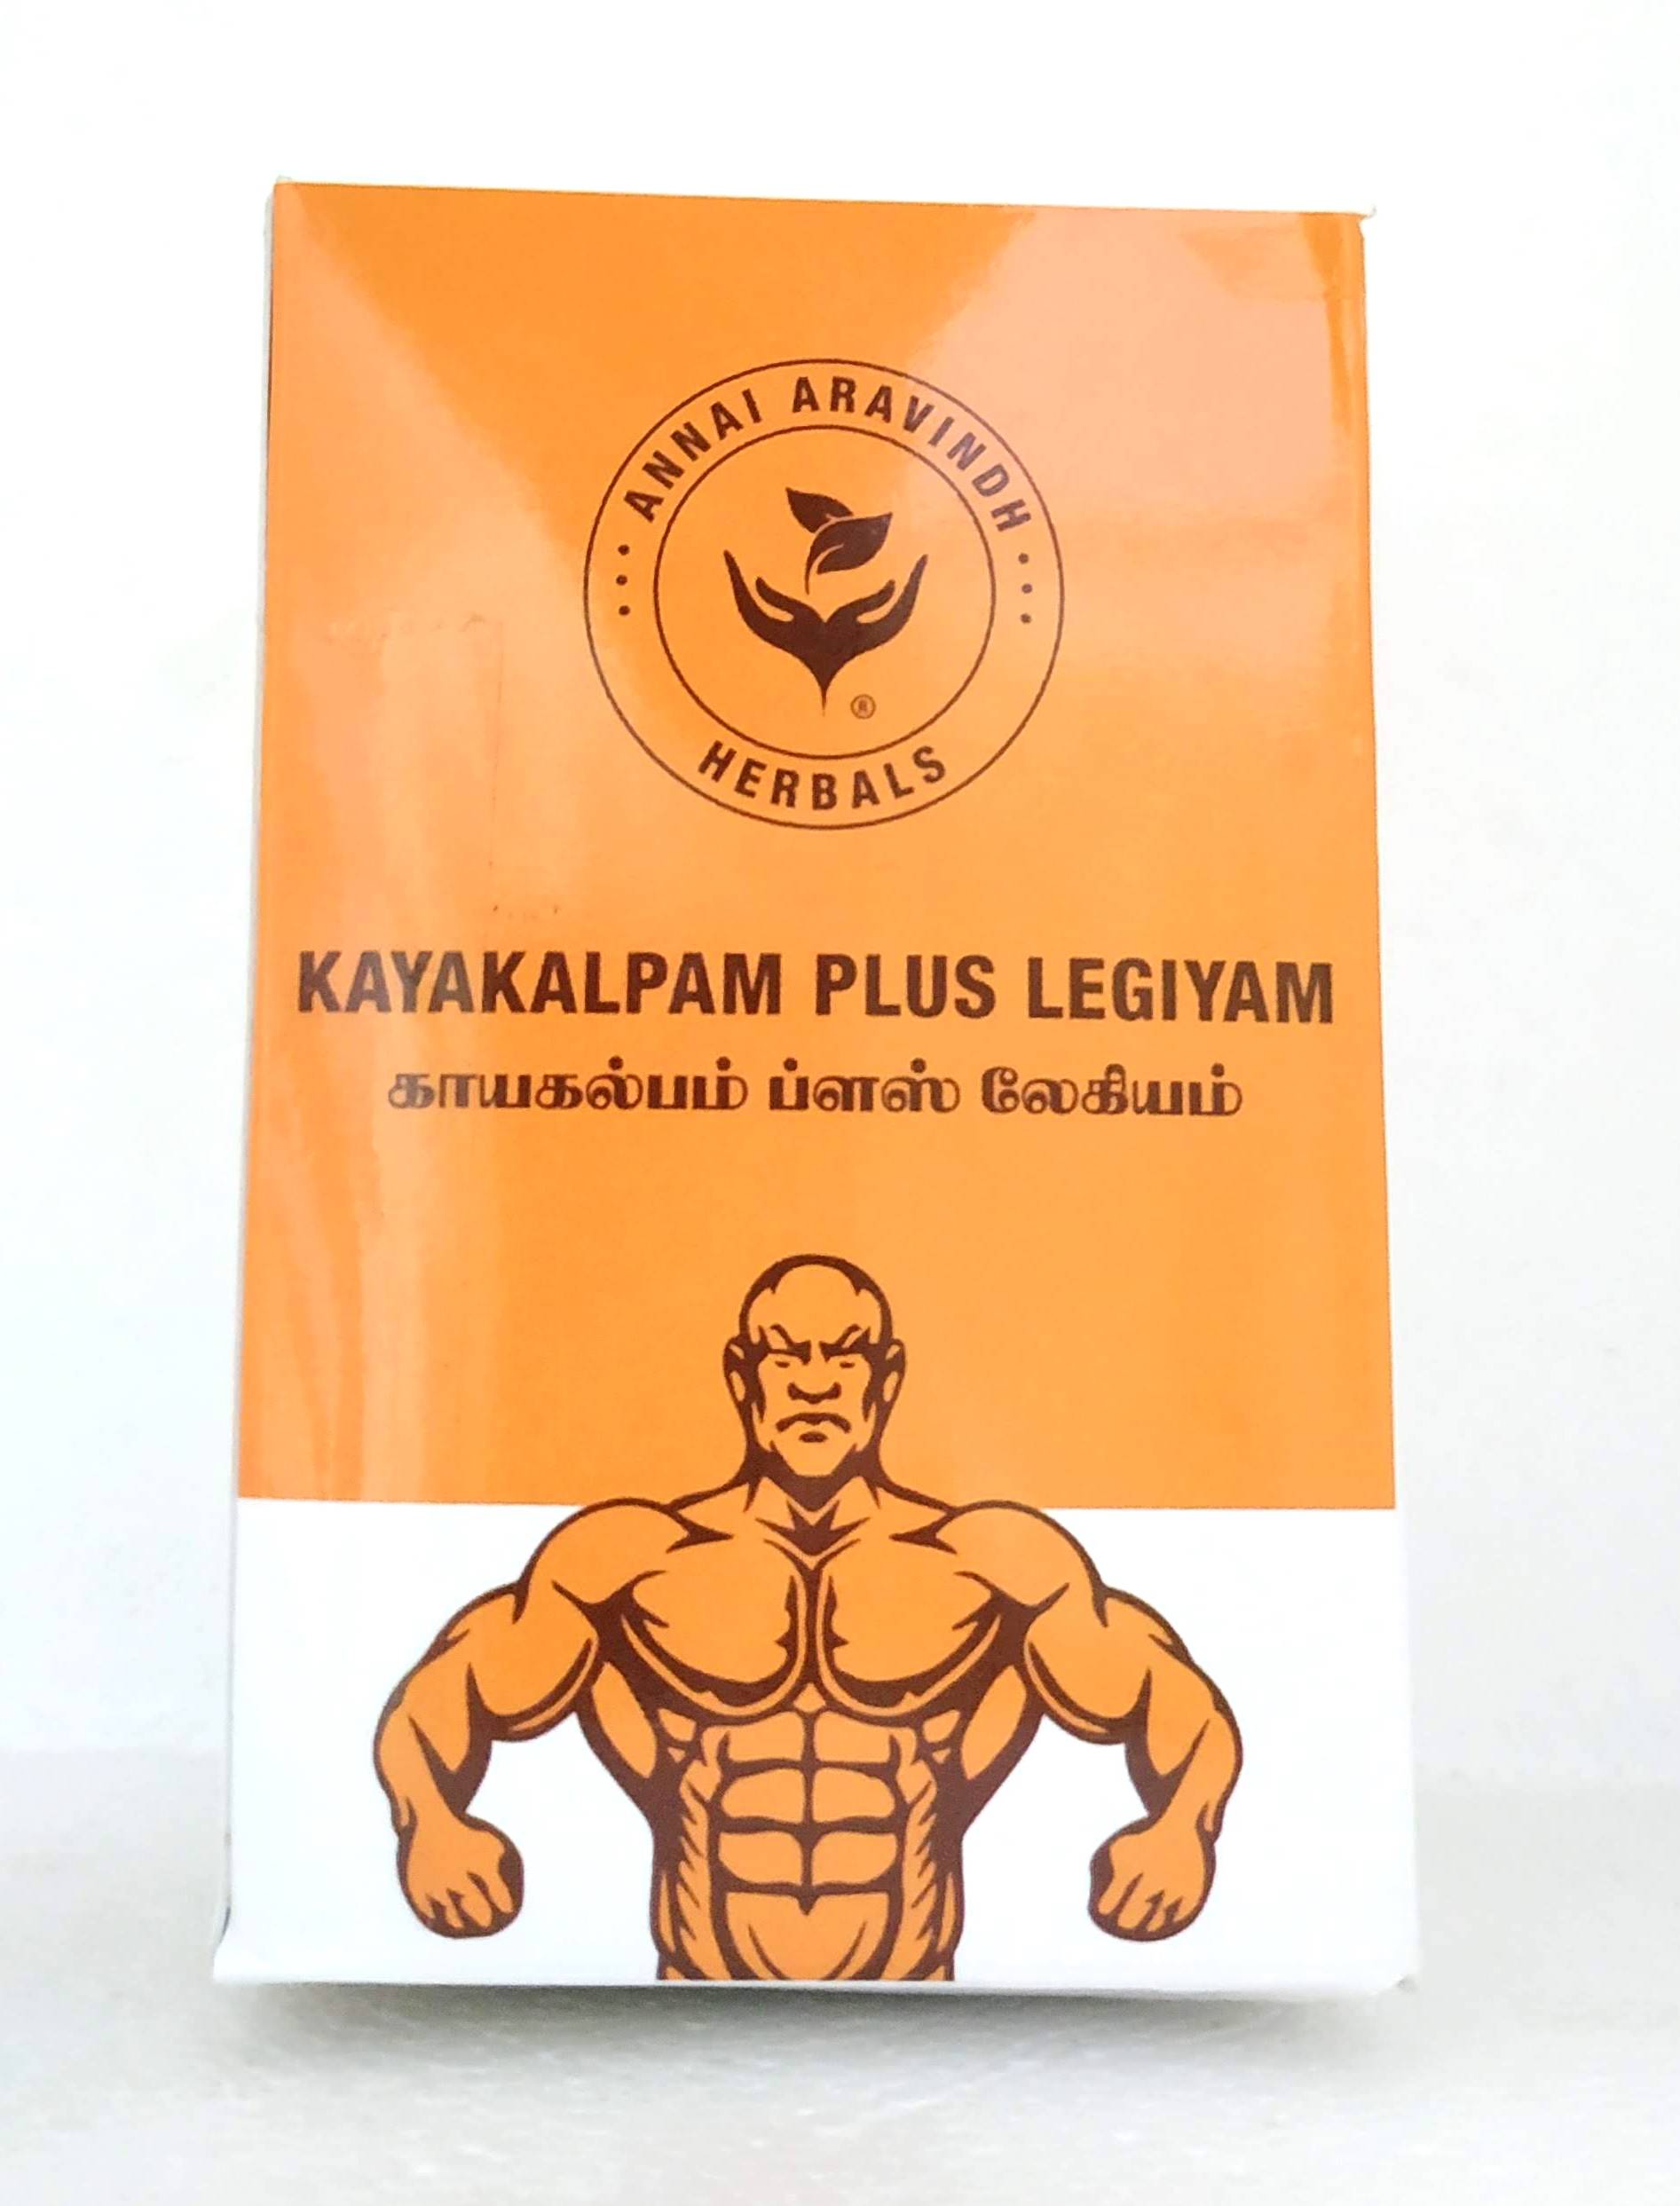 Shop Kayakalpam plus legiyam 250gm at price 450.00 from Annai Aravindh Online - Ayush Care